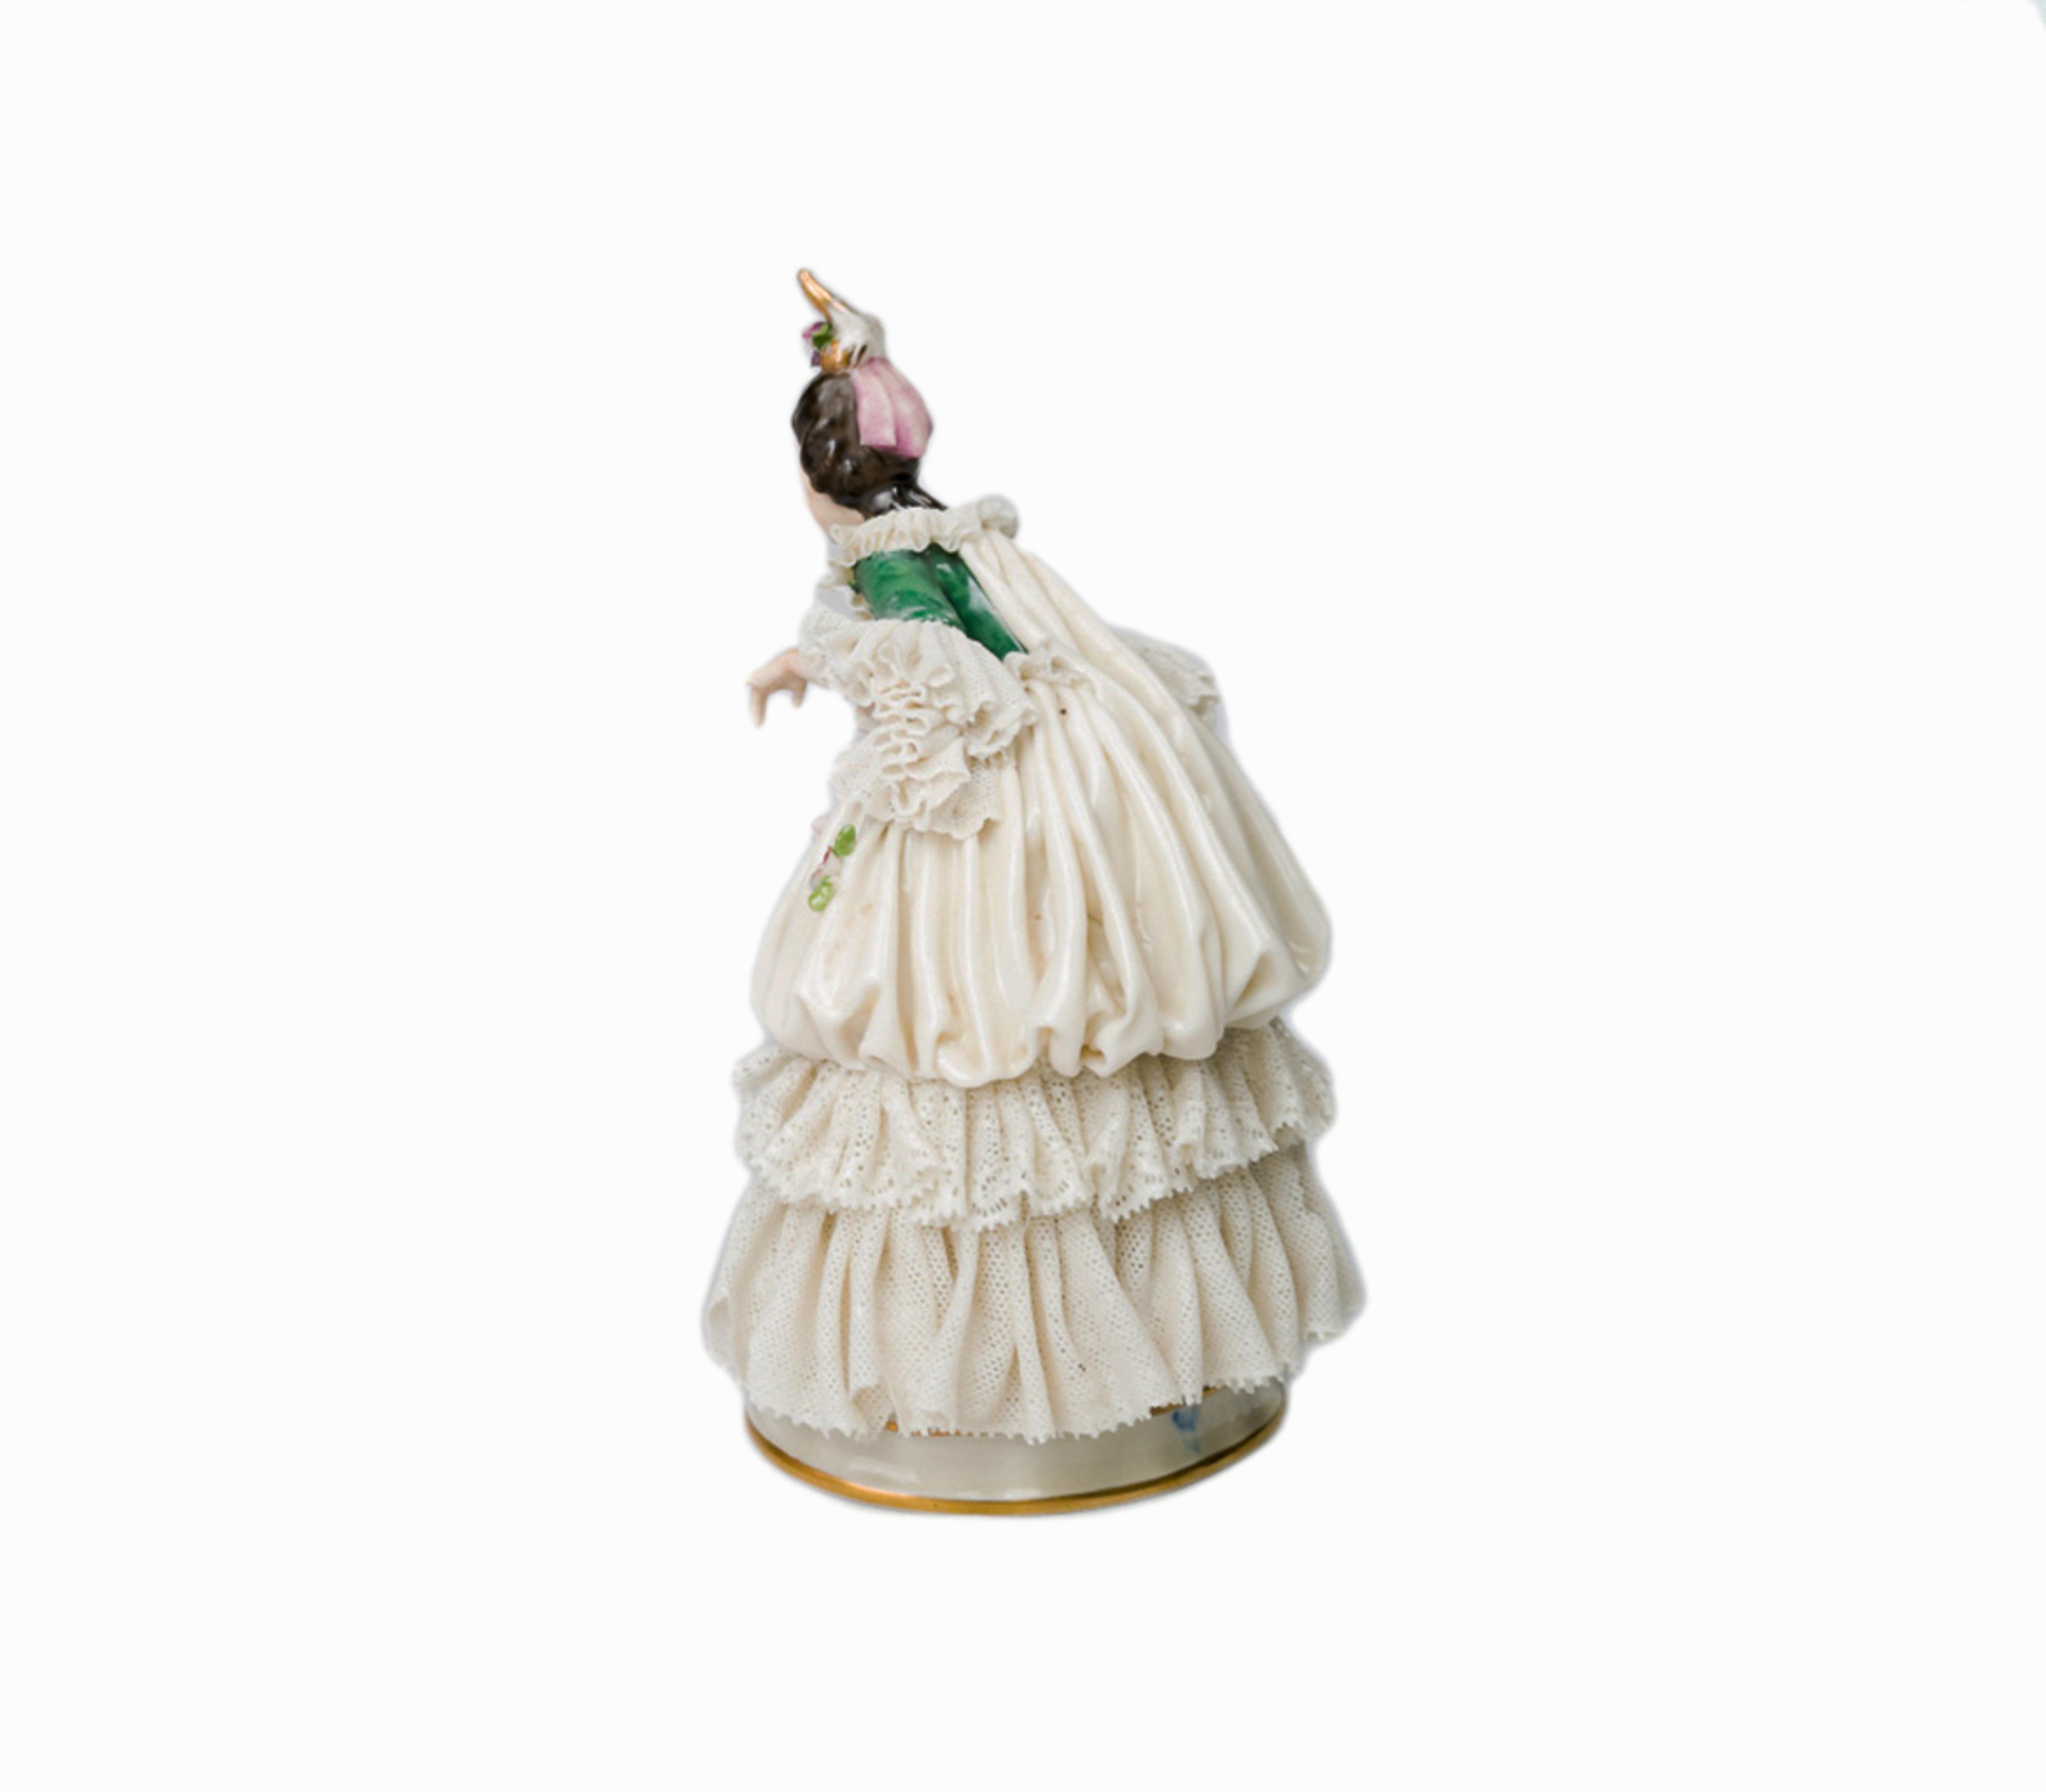 Eine bezaubernde italienische Capadimonte transluzente soft-paste Porzellanfigur einer barocken Dame  mit den Markierungen 